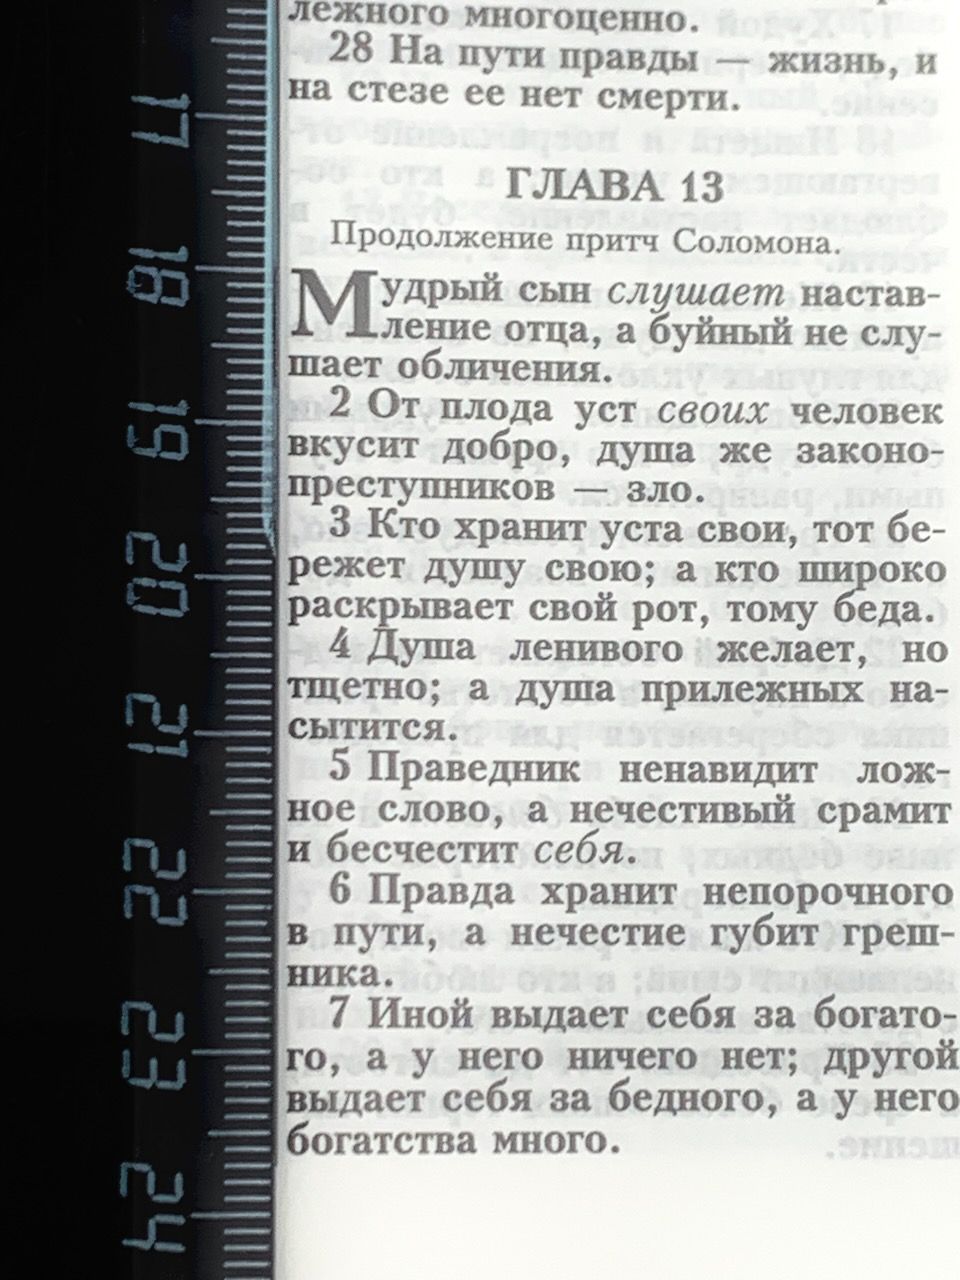 Библия 053z код B5 дизайн "золотой лев", кожаный переплет на молнии, цвет белый, формат 140*202 мм